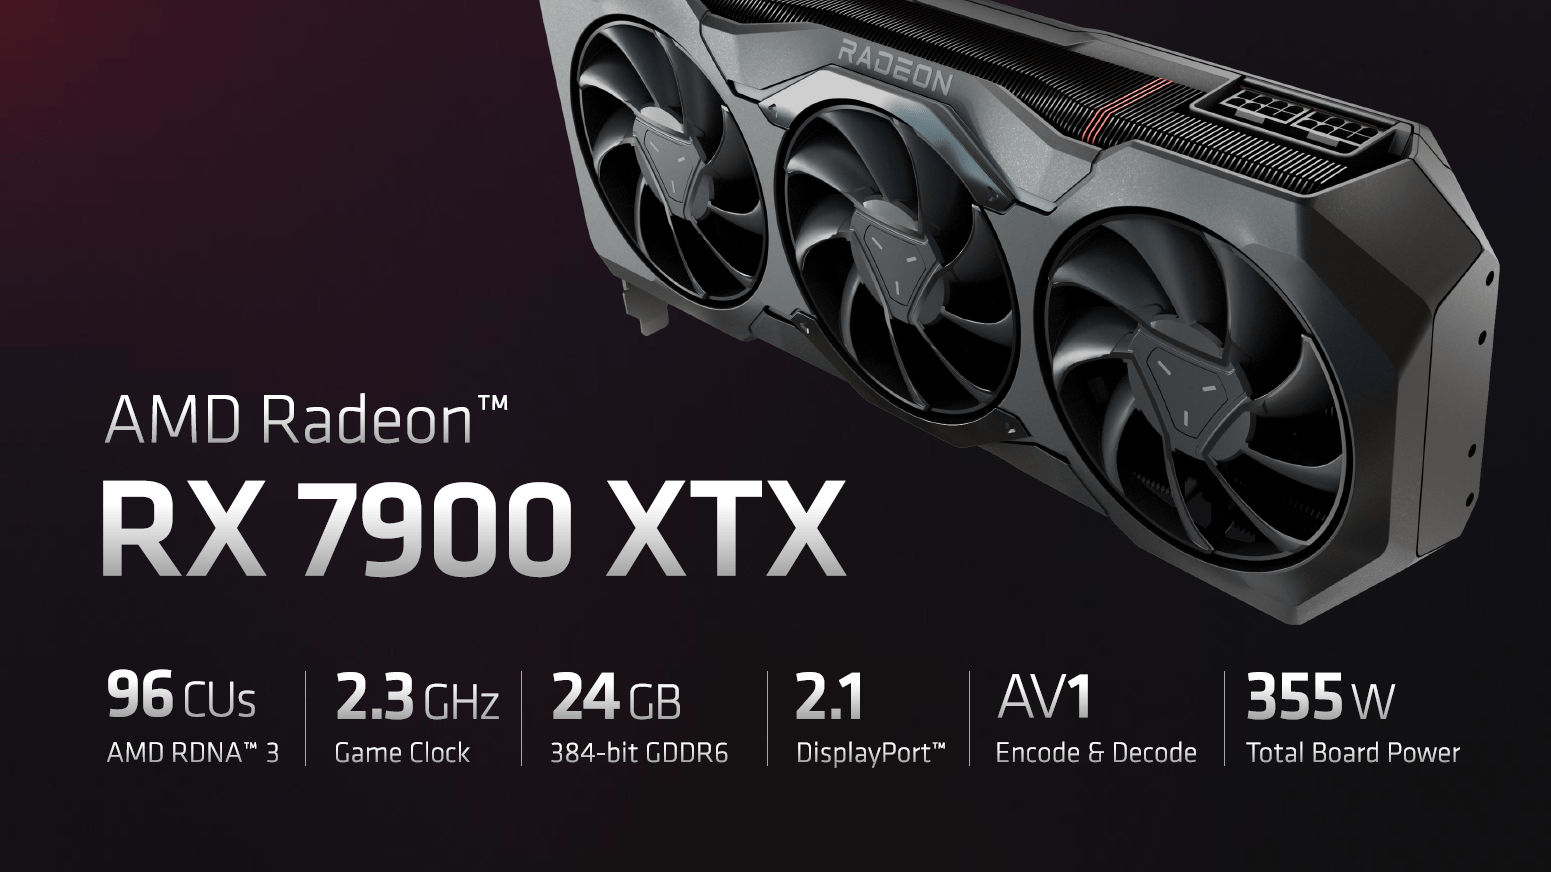 Especificações técnicas da nova placa de vídeo top de linha da AMD